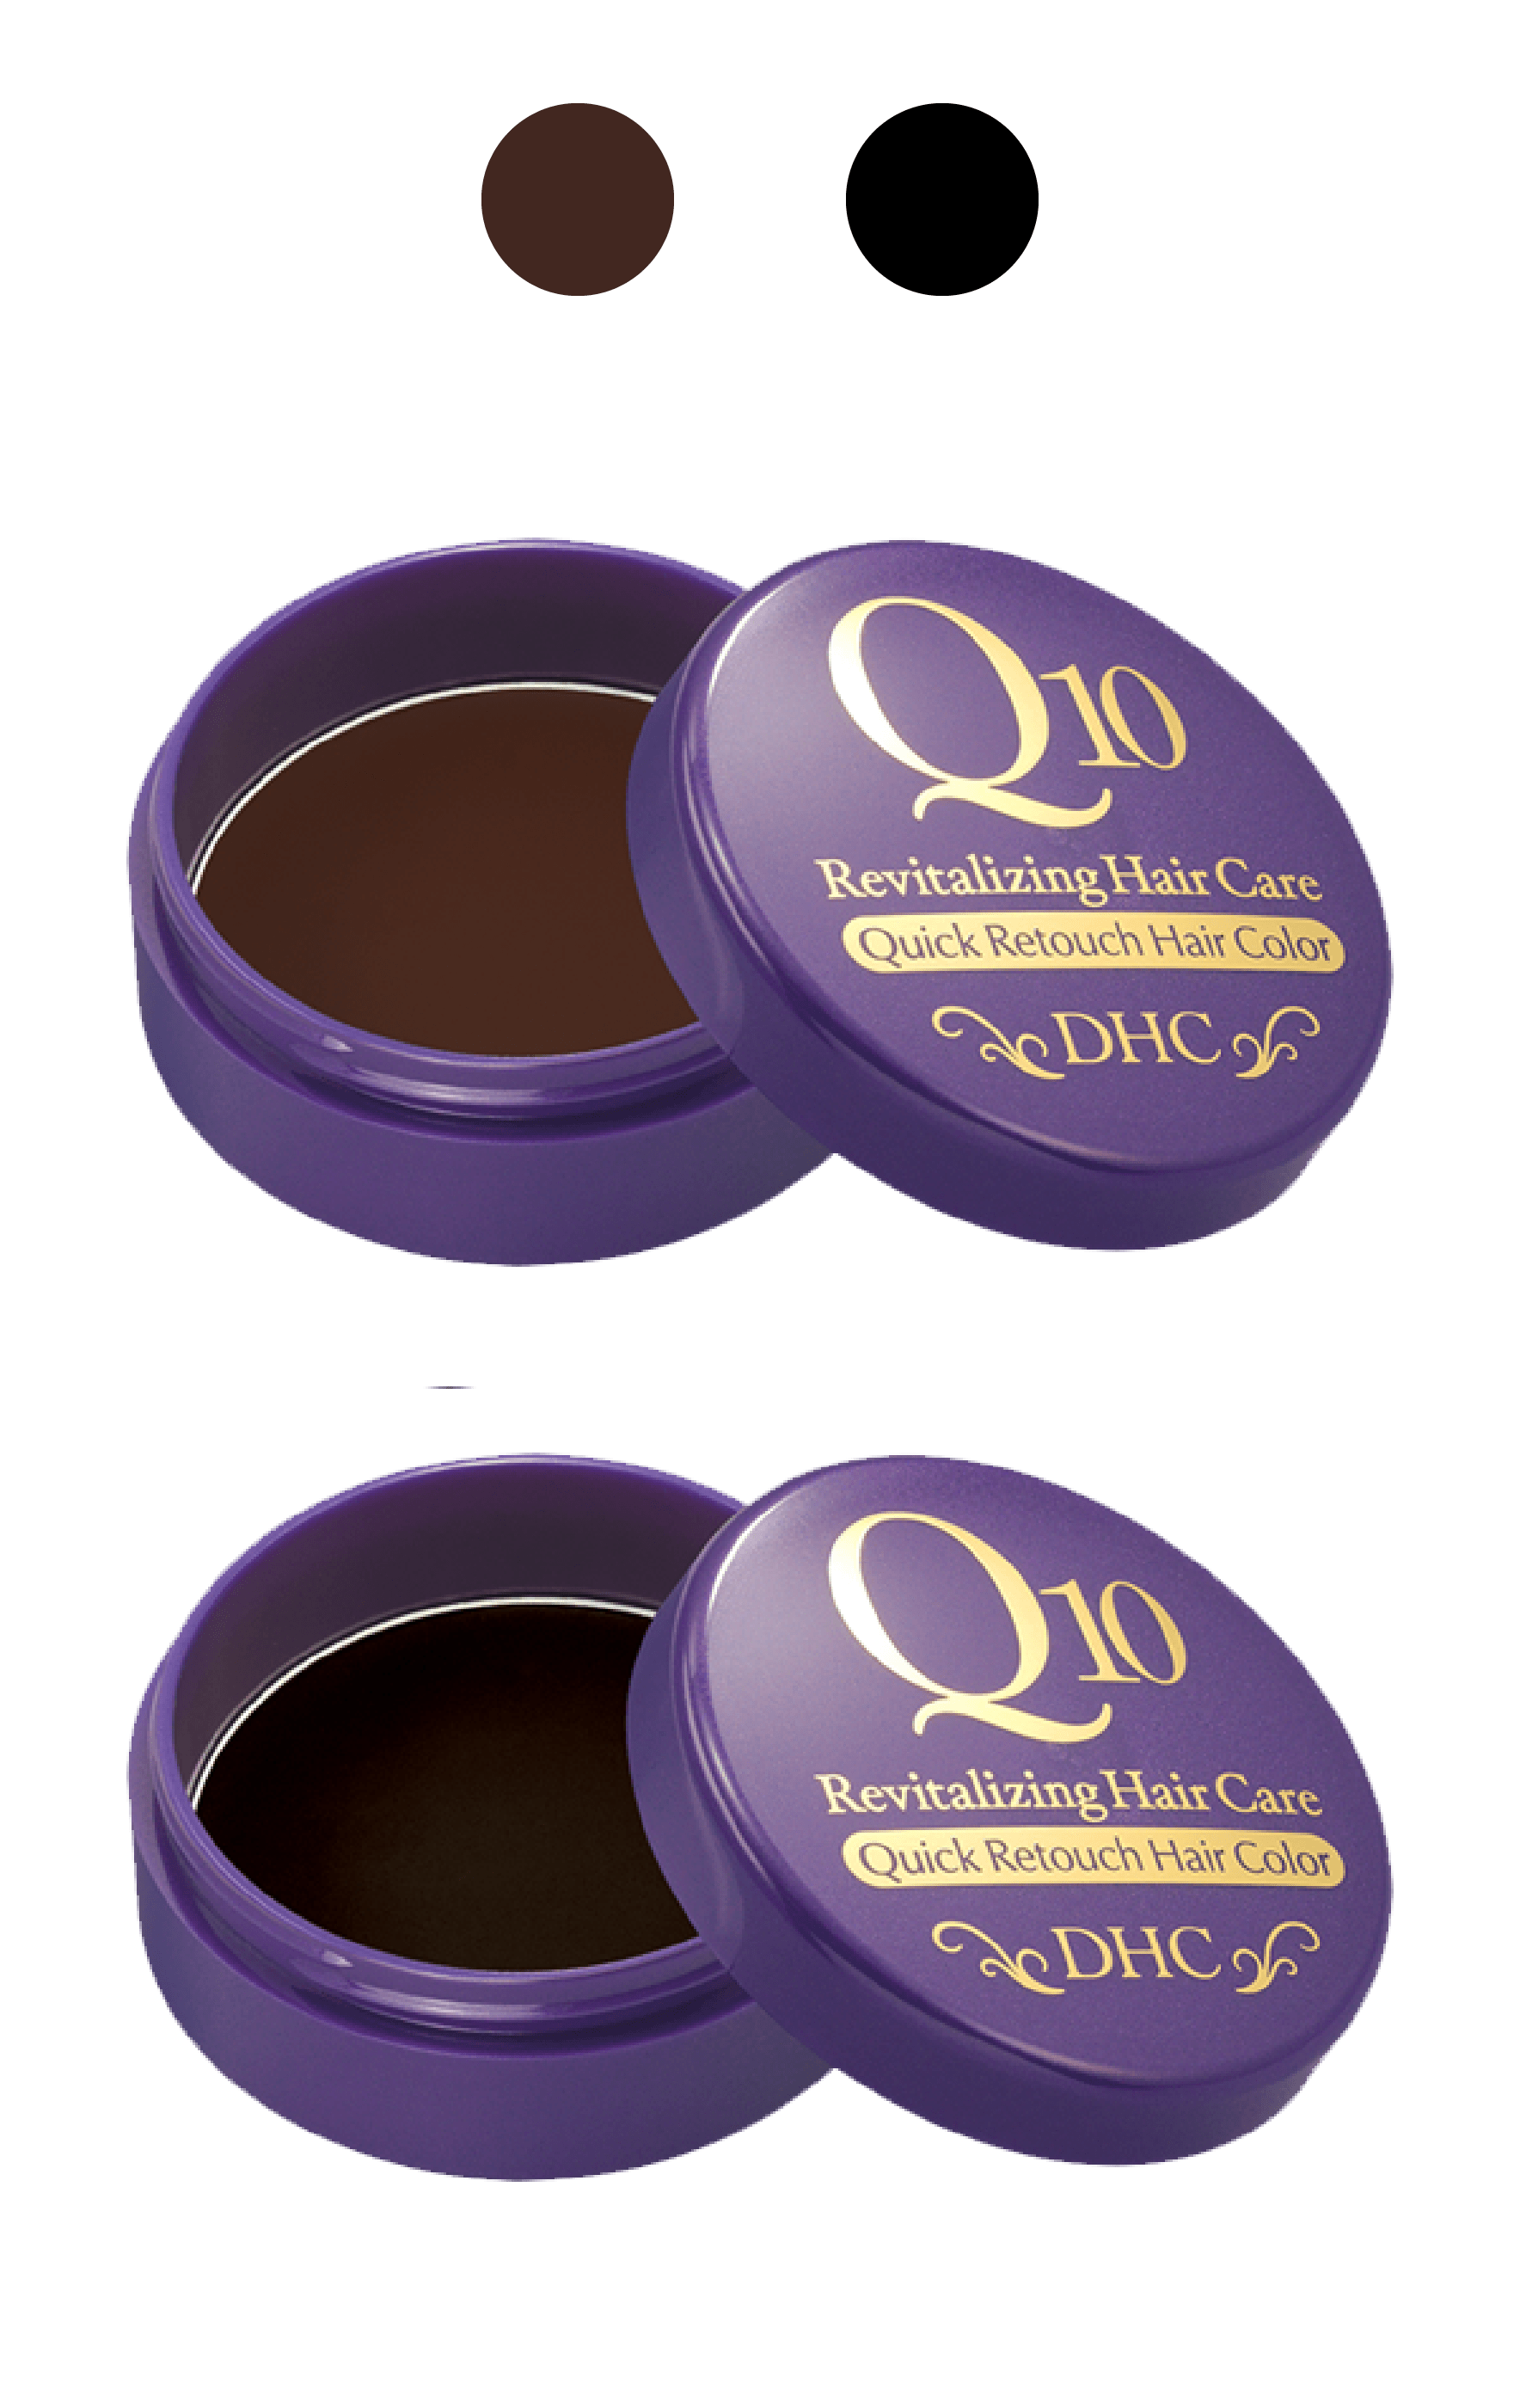 Q10 Quick Retouch Hair Color 45g